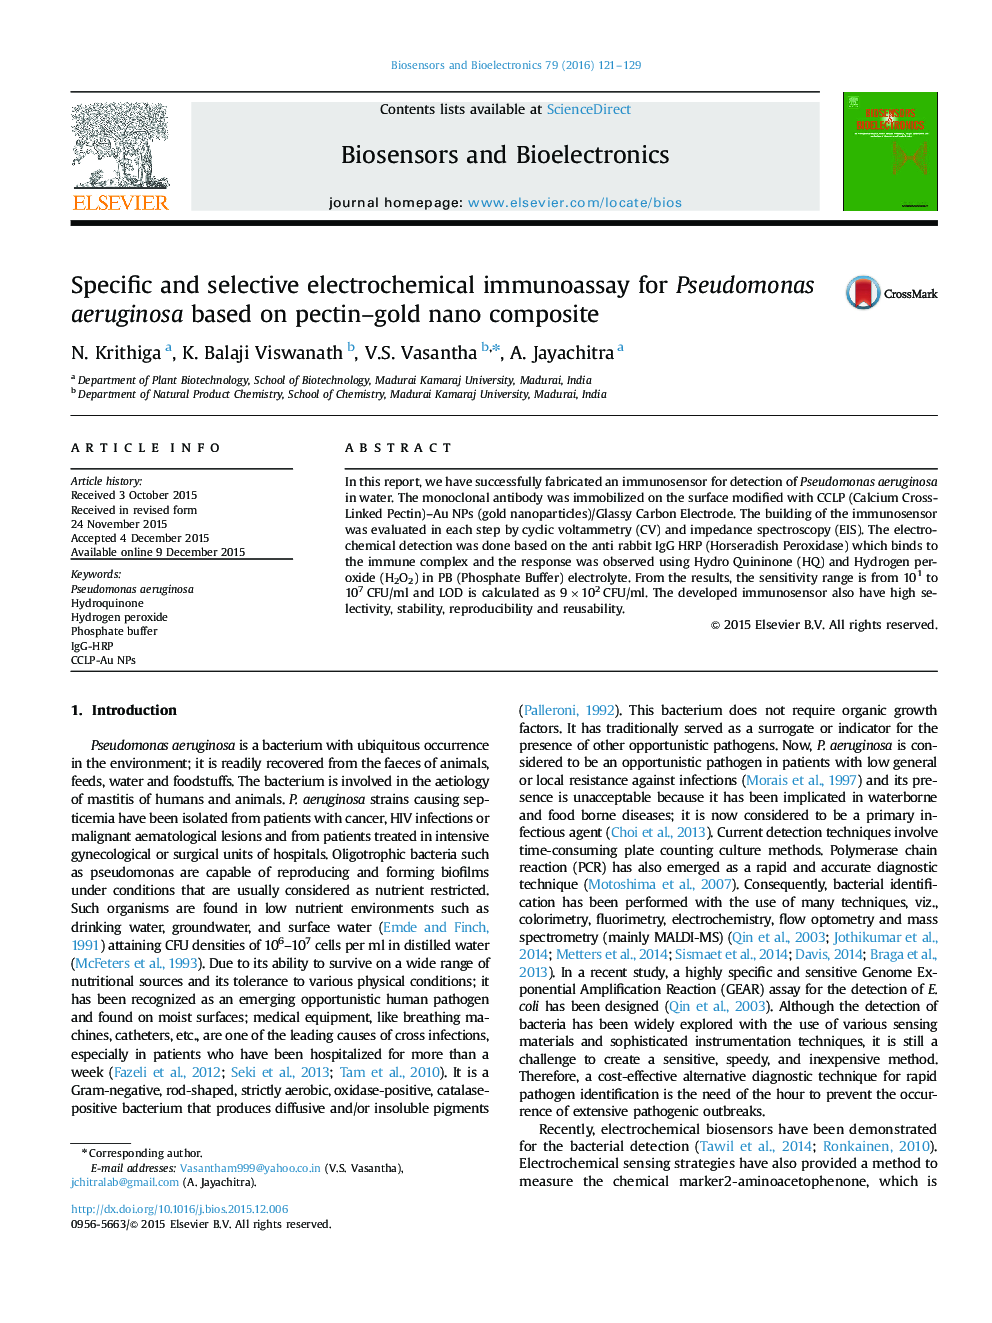 ایمونواسیون الکتروشیمیایی اختصاصی و انتخابی برای سودوموناس آئروژینوزا بر پایه نانو کامپوزیت پکتین-طلا 